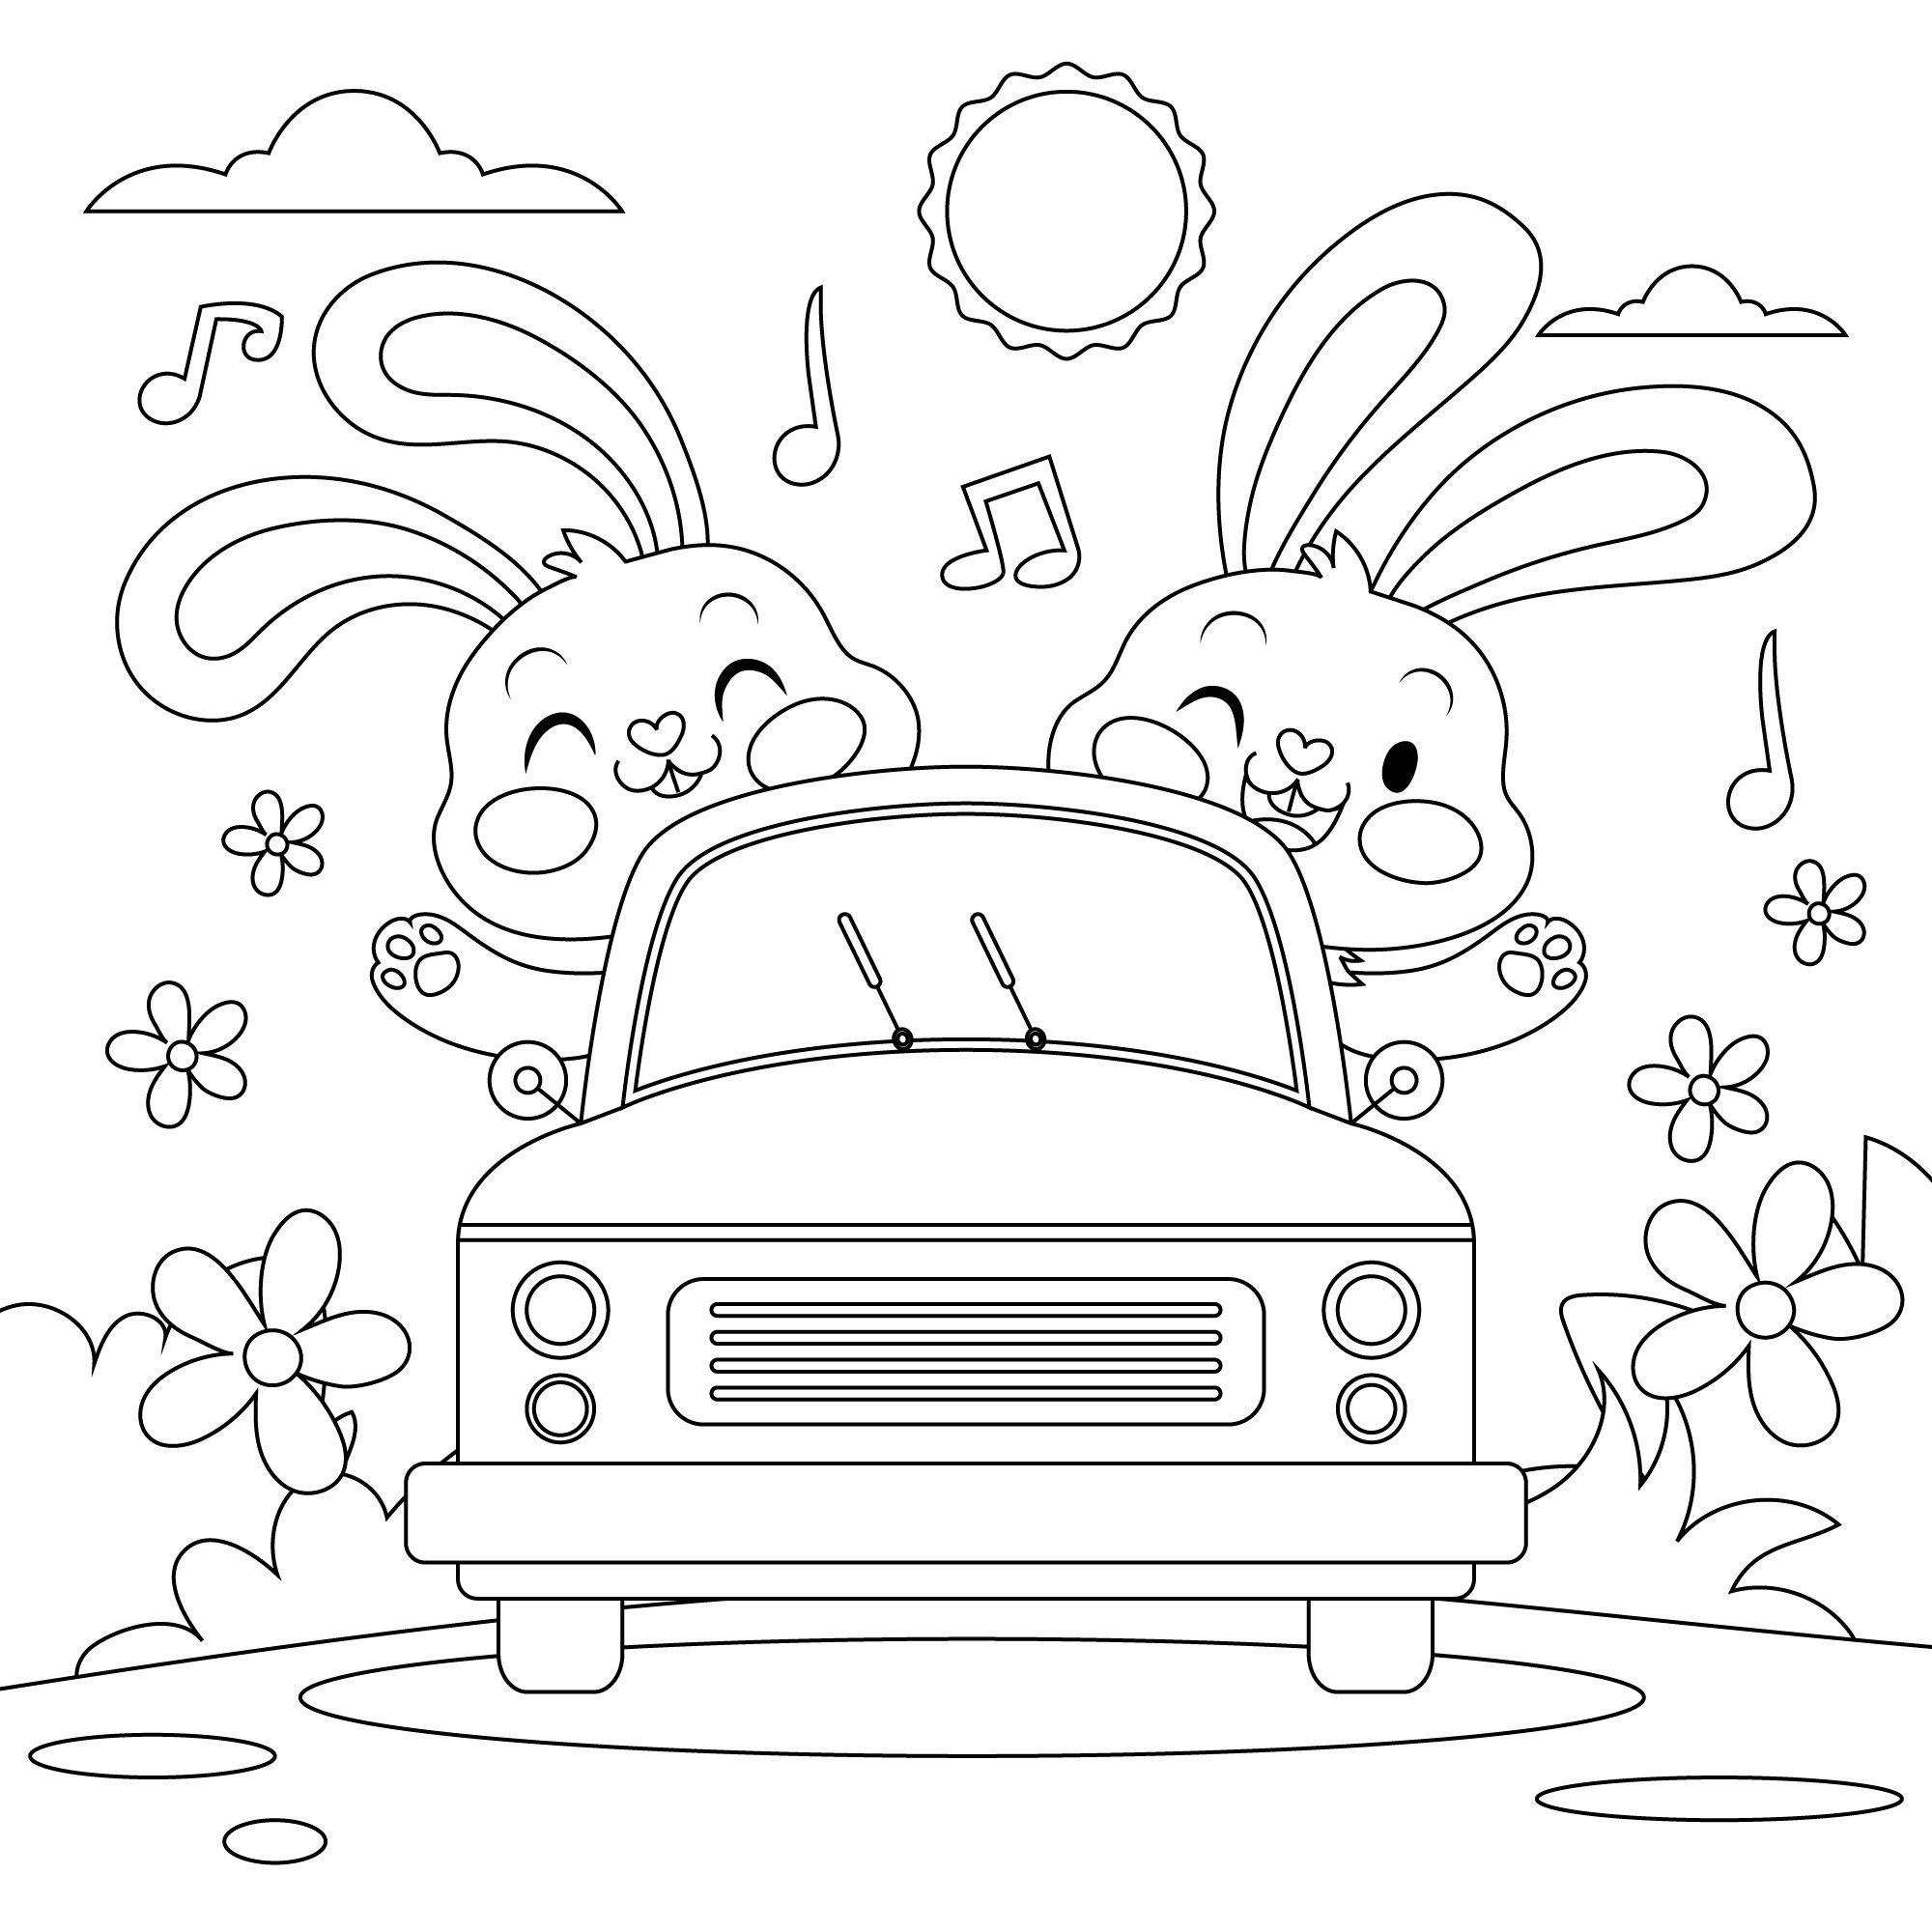 Раскраска для детей: сказочные зайцы едут в автомобиле